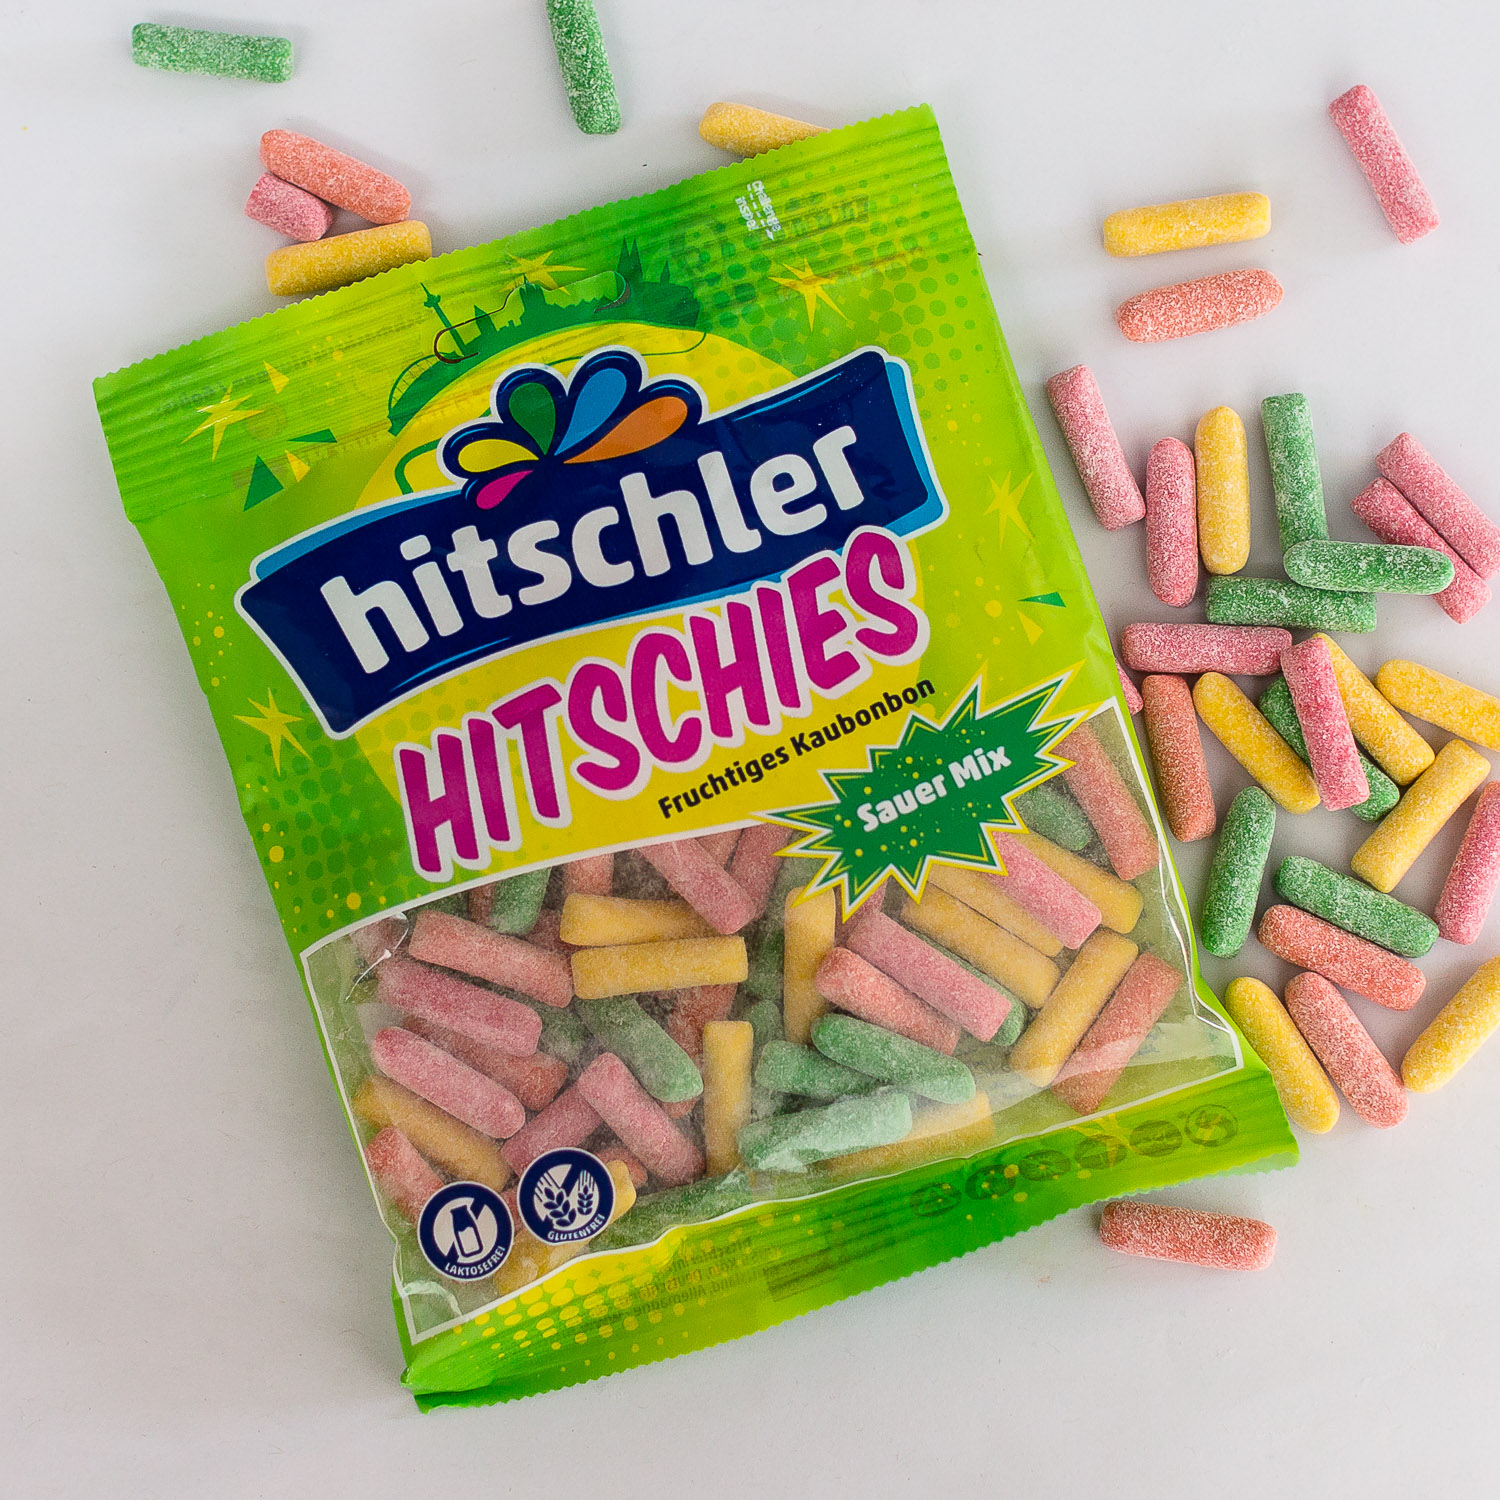 Hitschies bonbons craies acidulées - Candy Kids